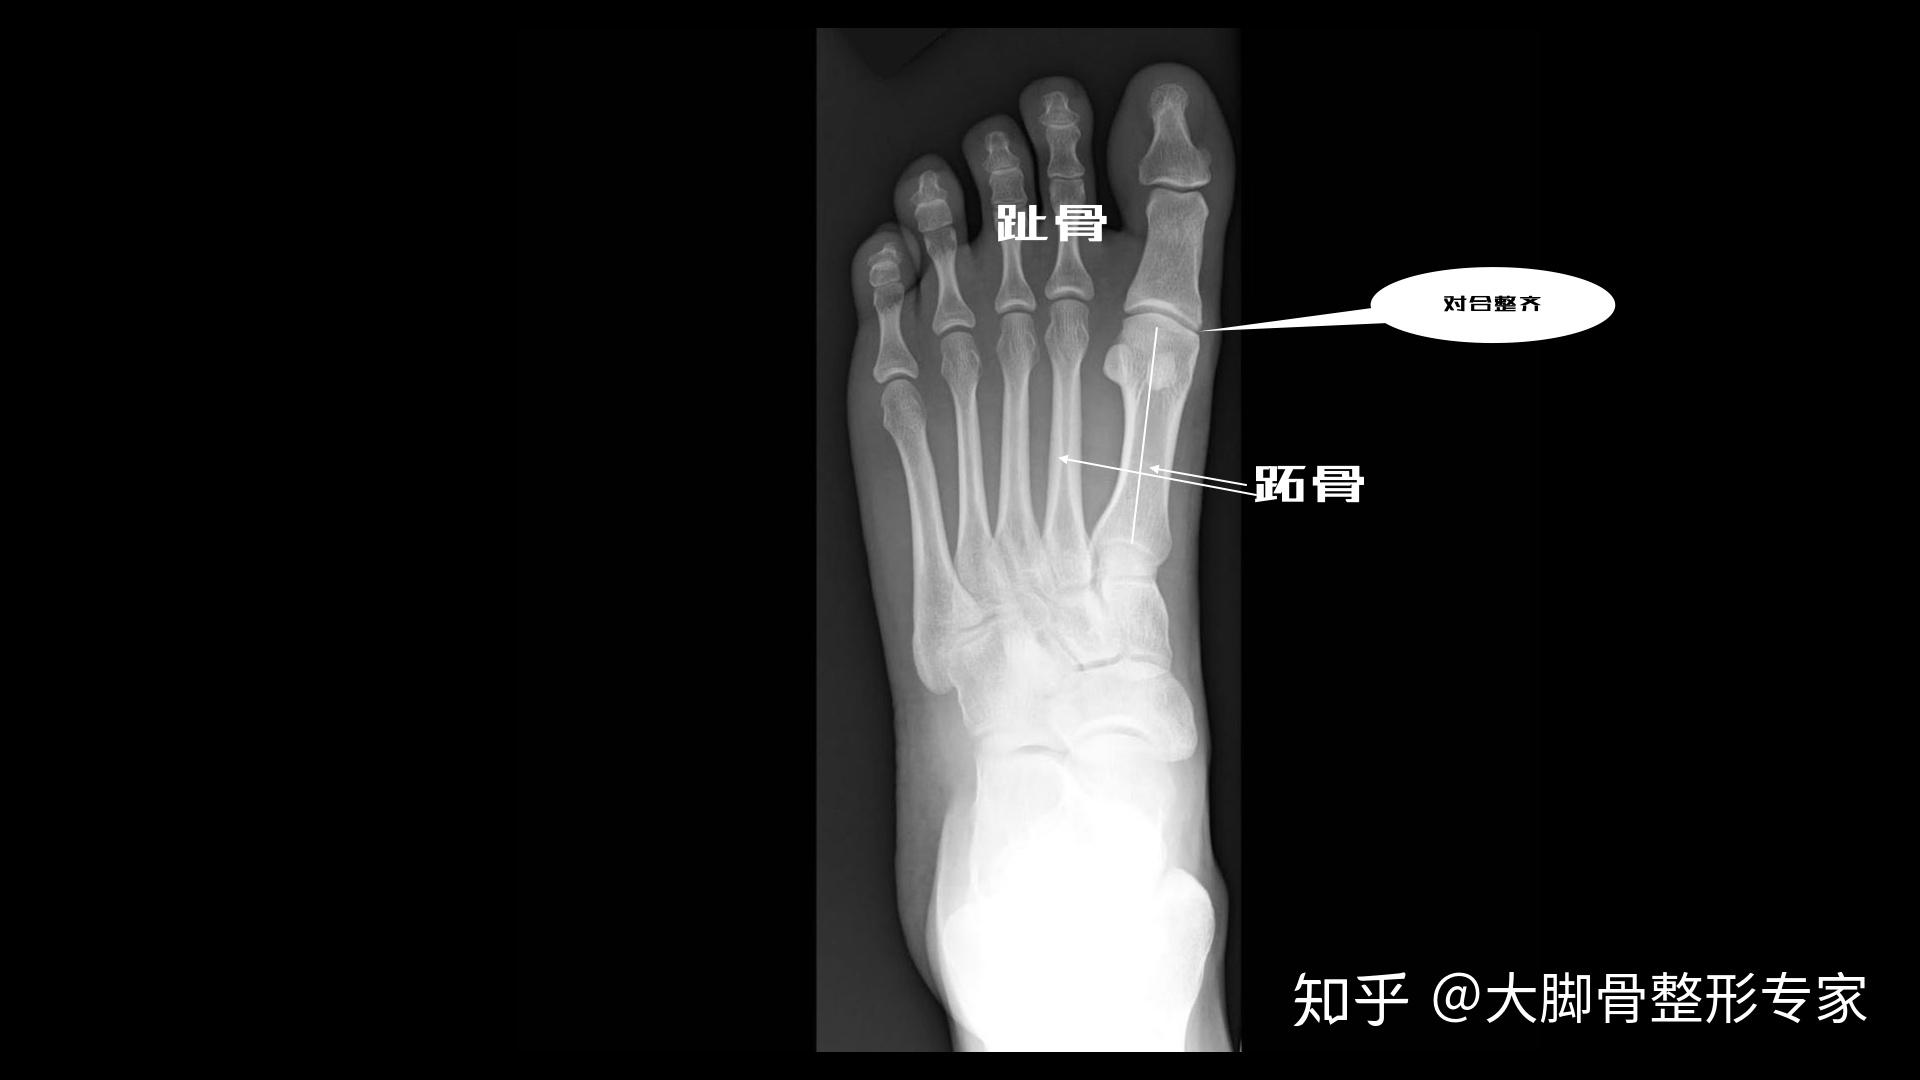 分享一个哈尔滨大脚骨手术-马上坐诊哈尔滨 - 哔哩哔哩